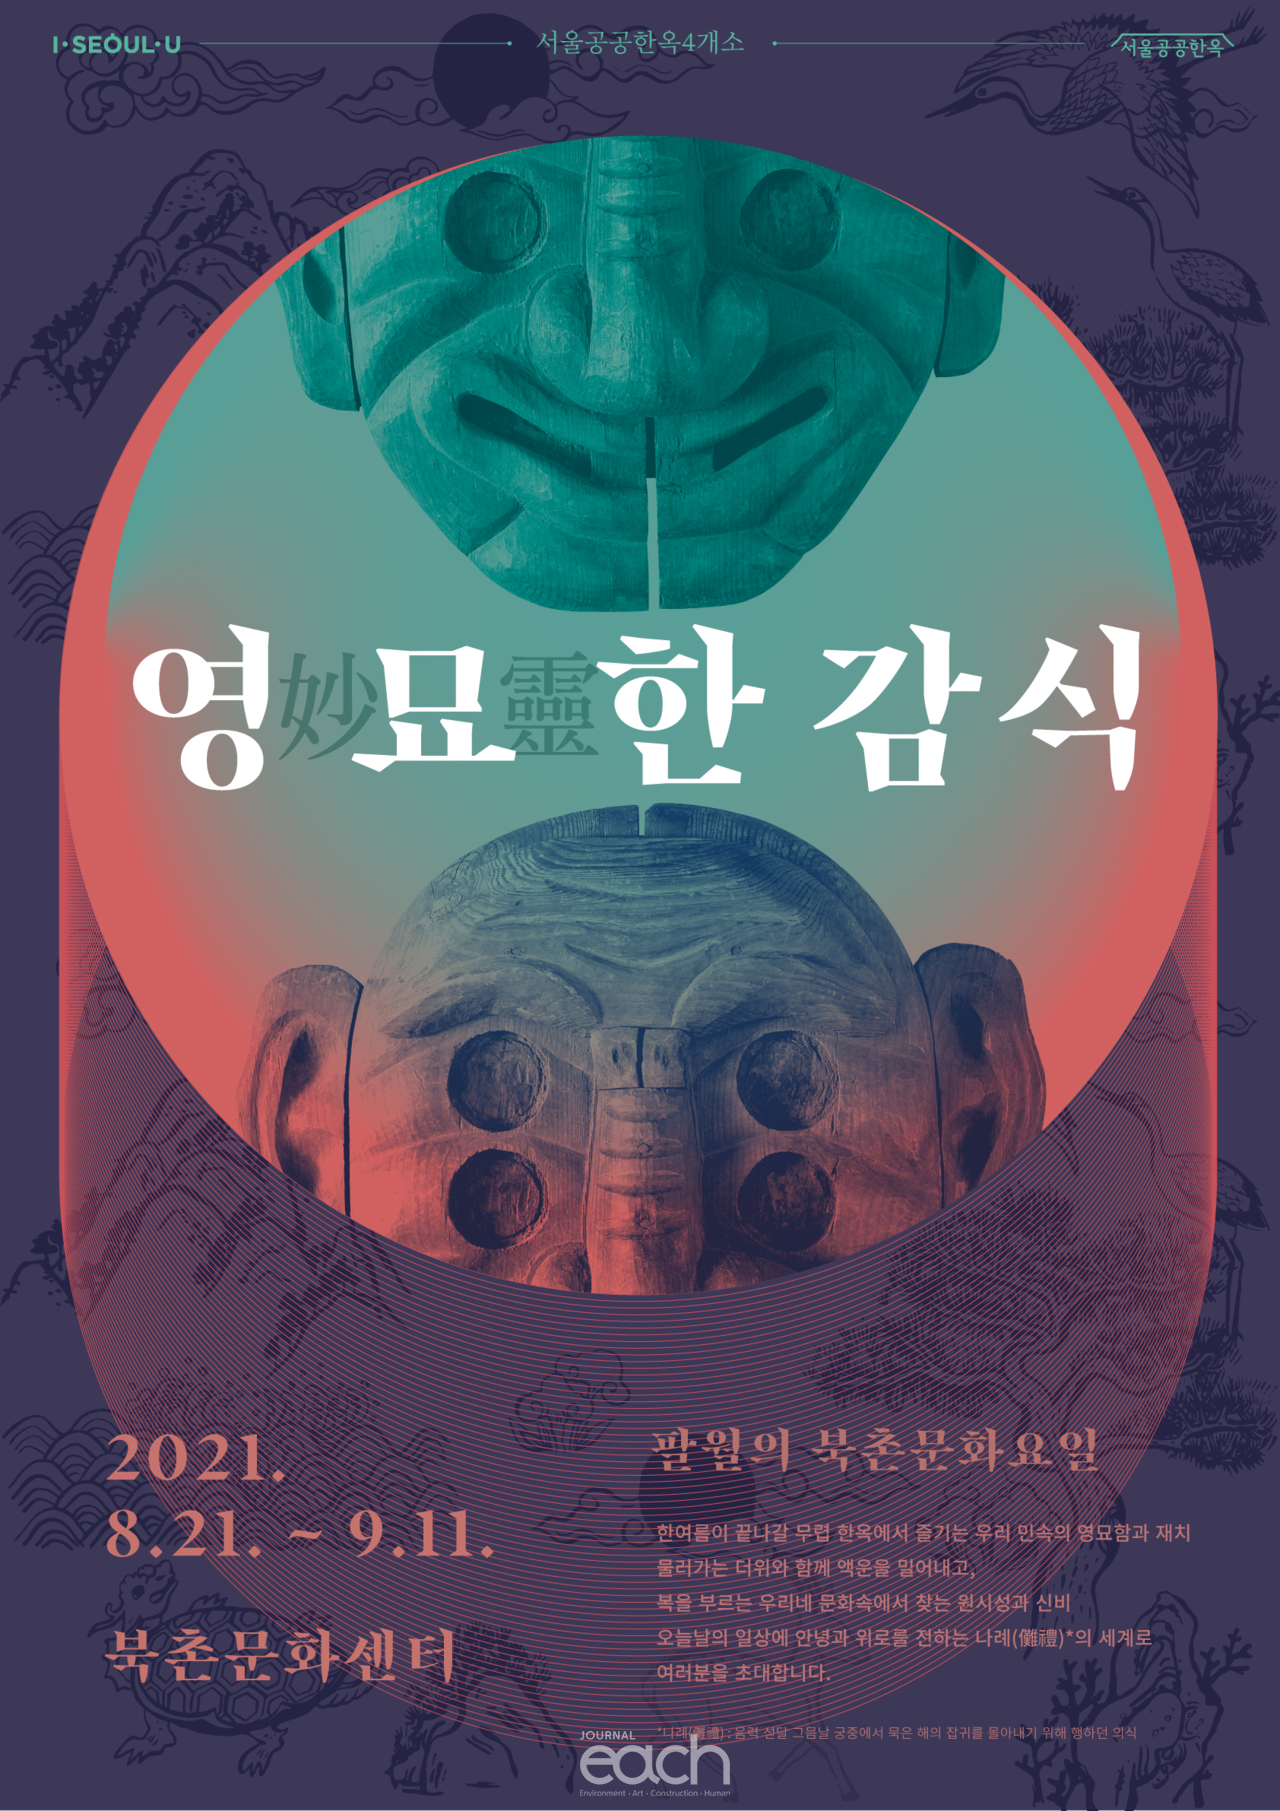 팔월의 북촌문화요일 포스터(자료제공 : 서울특별시)